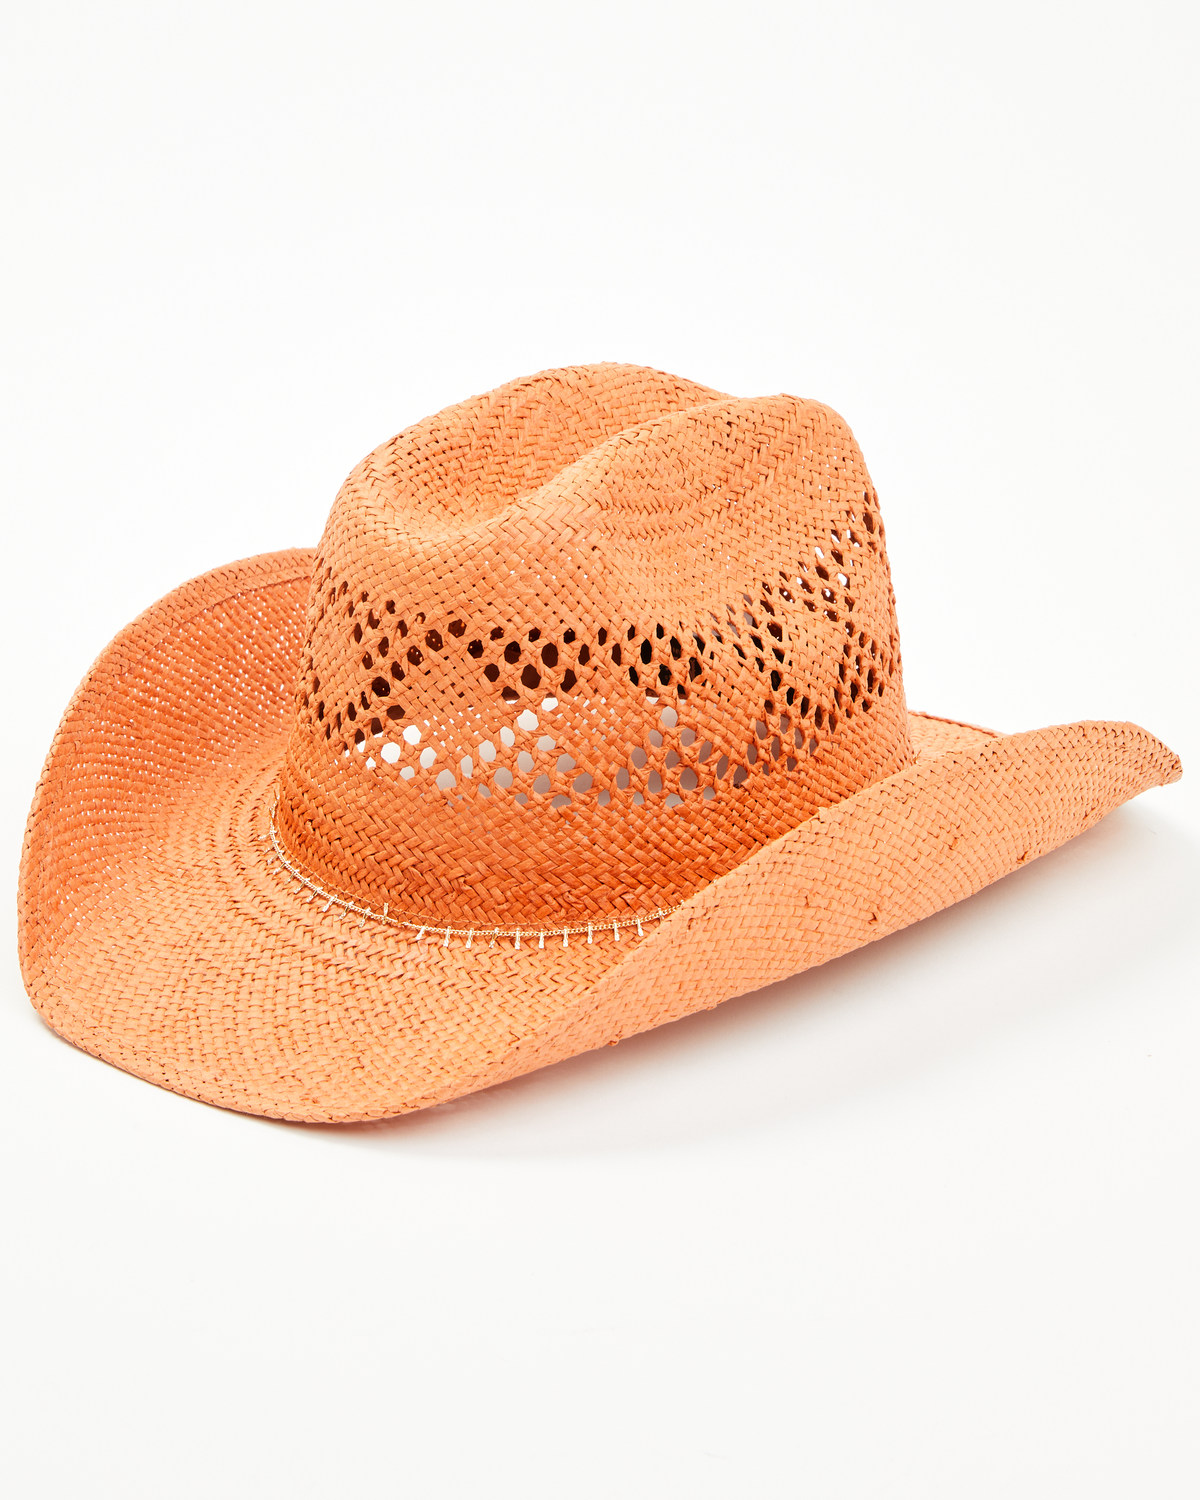 Shyanne Women's Lottie Straw Cowboy Hat